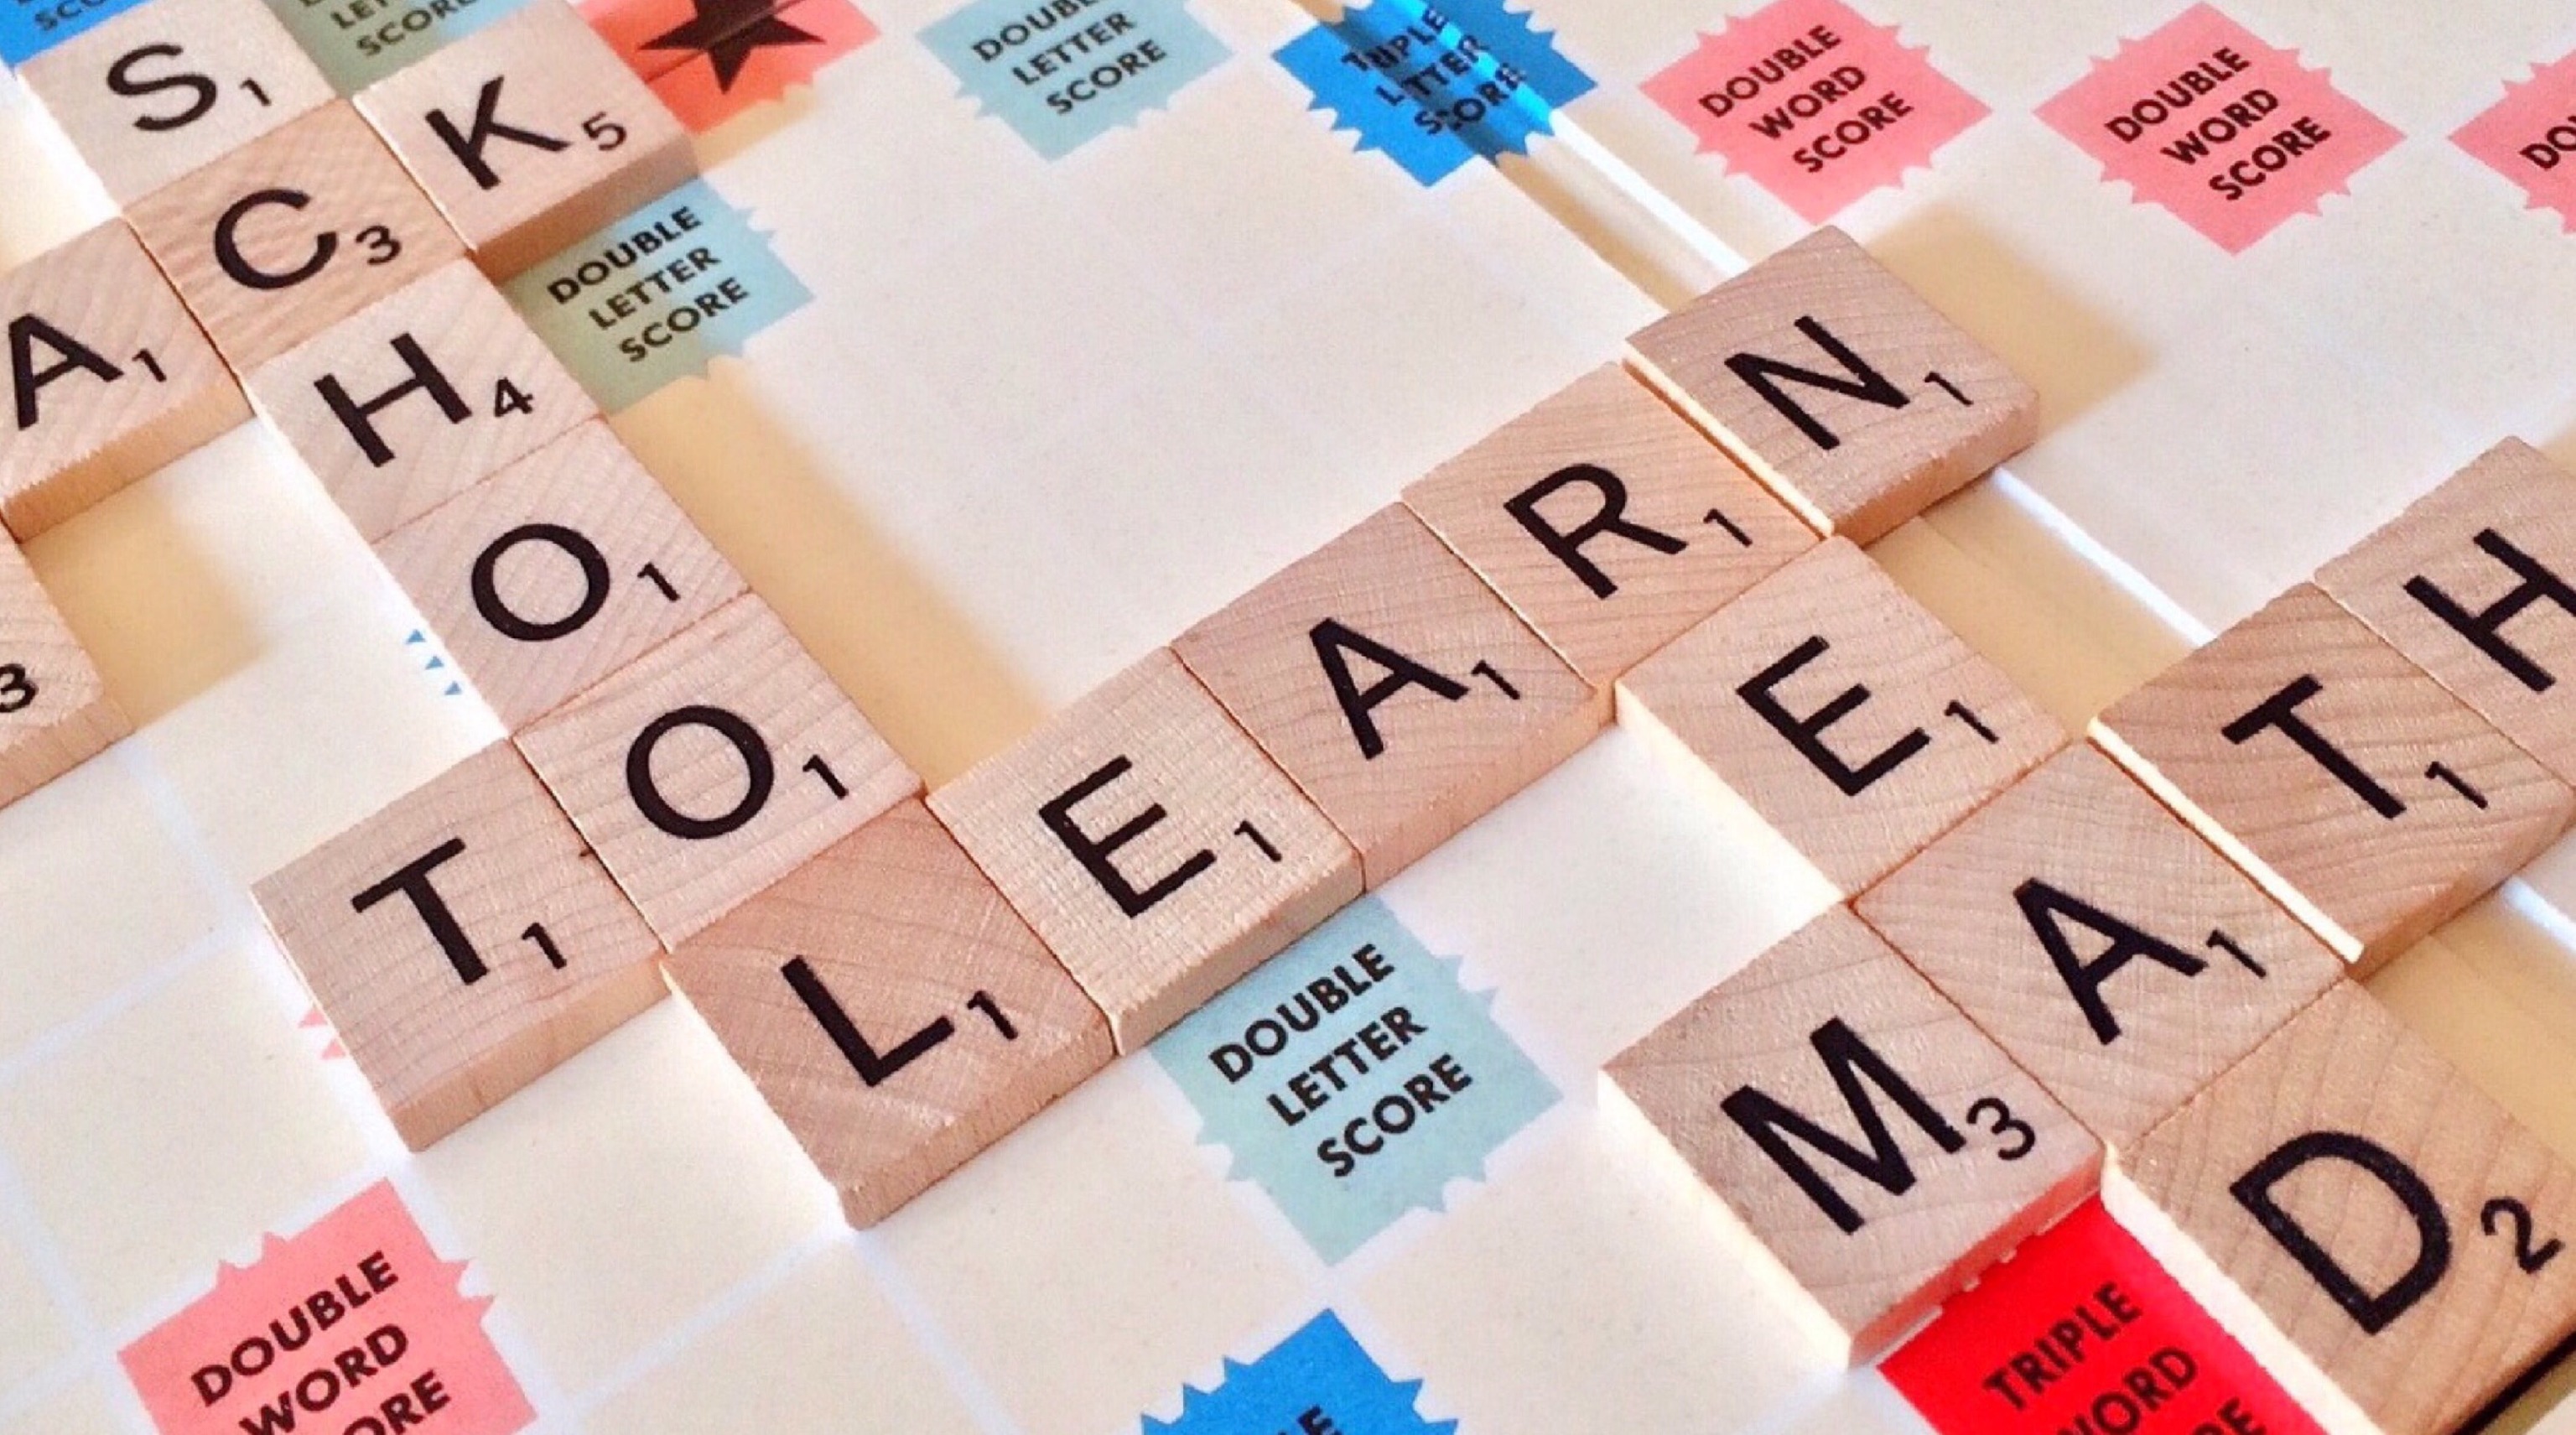 Juegos para fortalecer la memoria: Scrabble